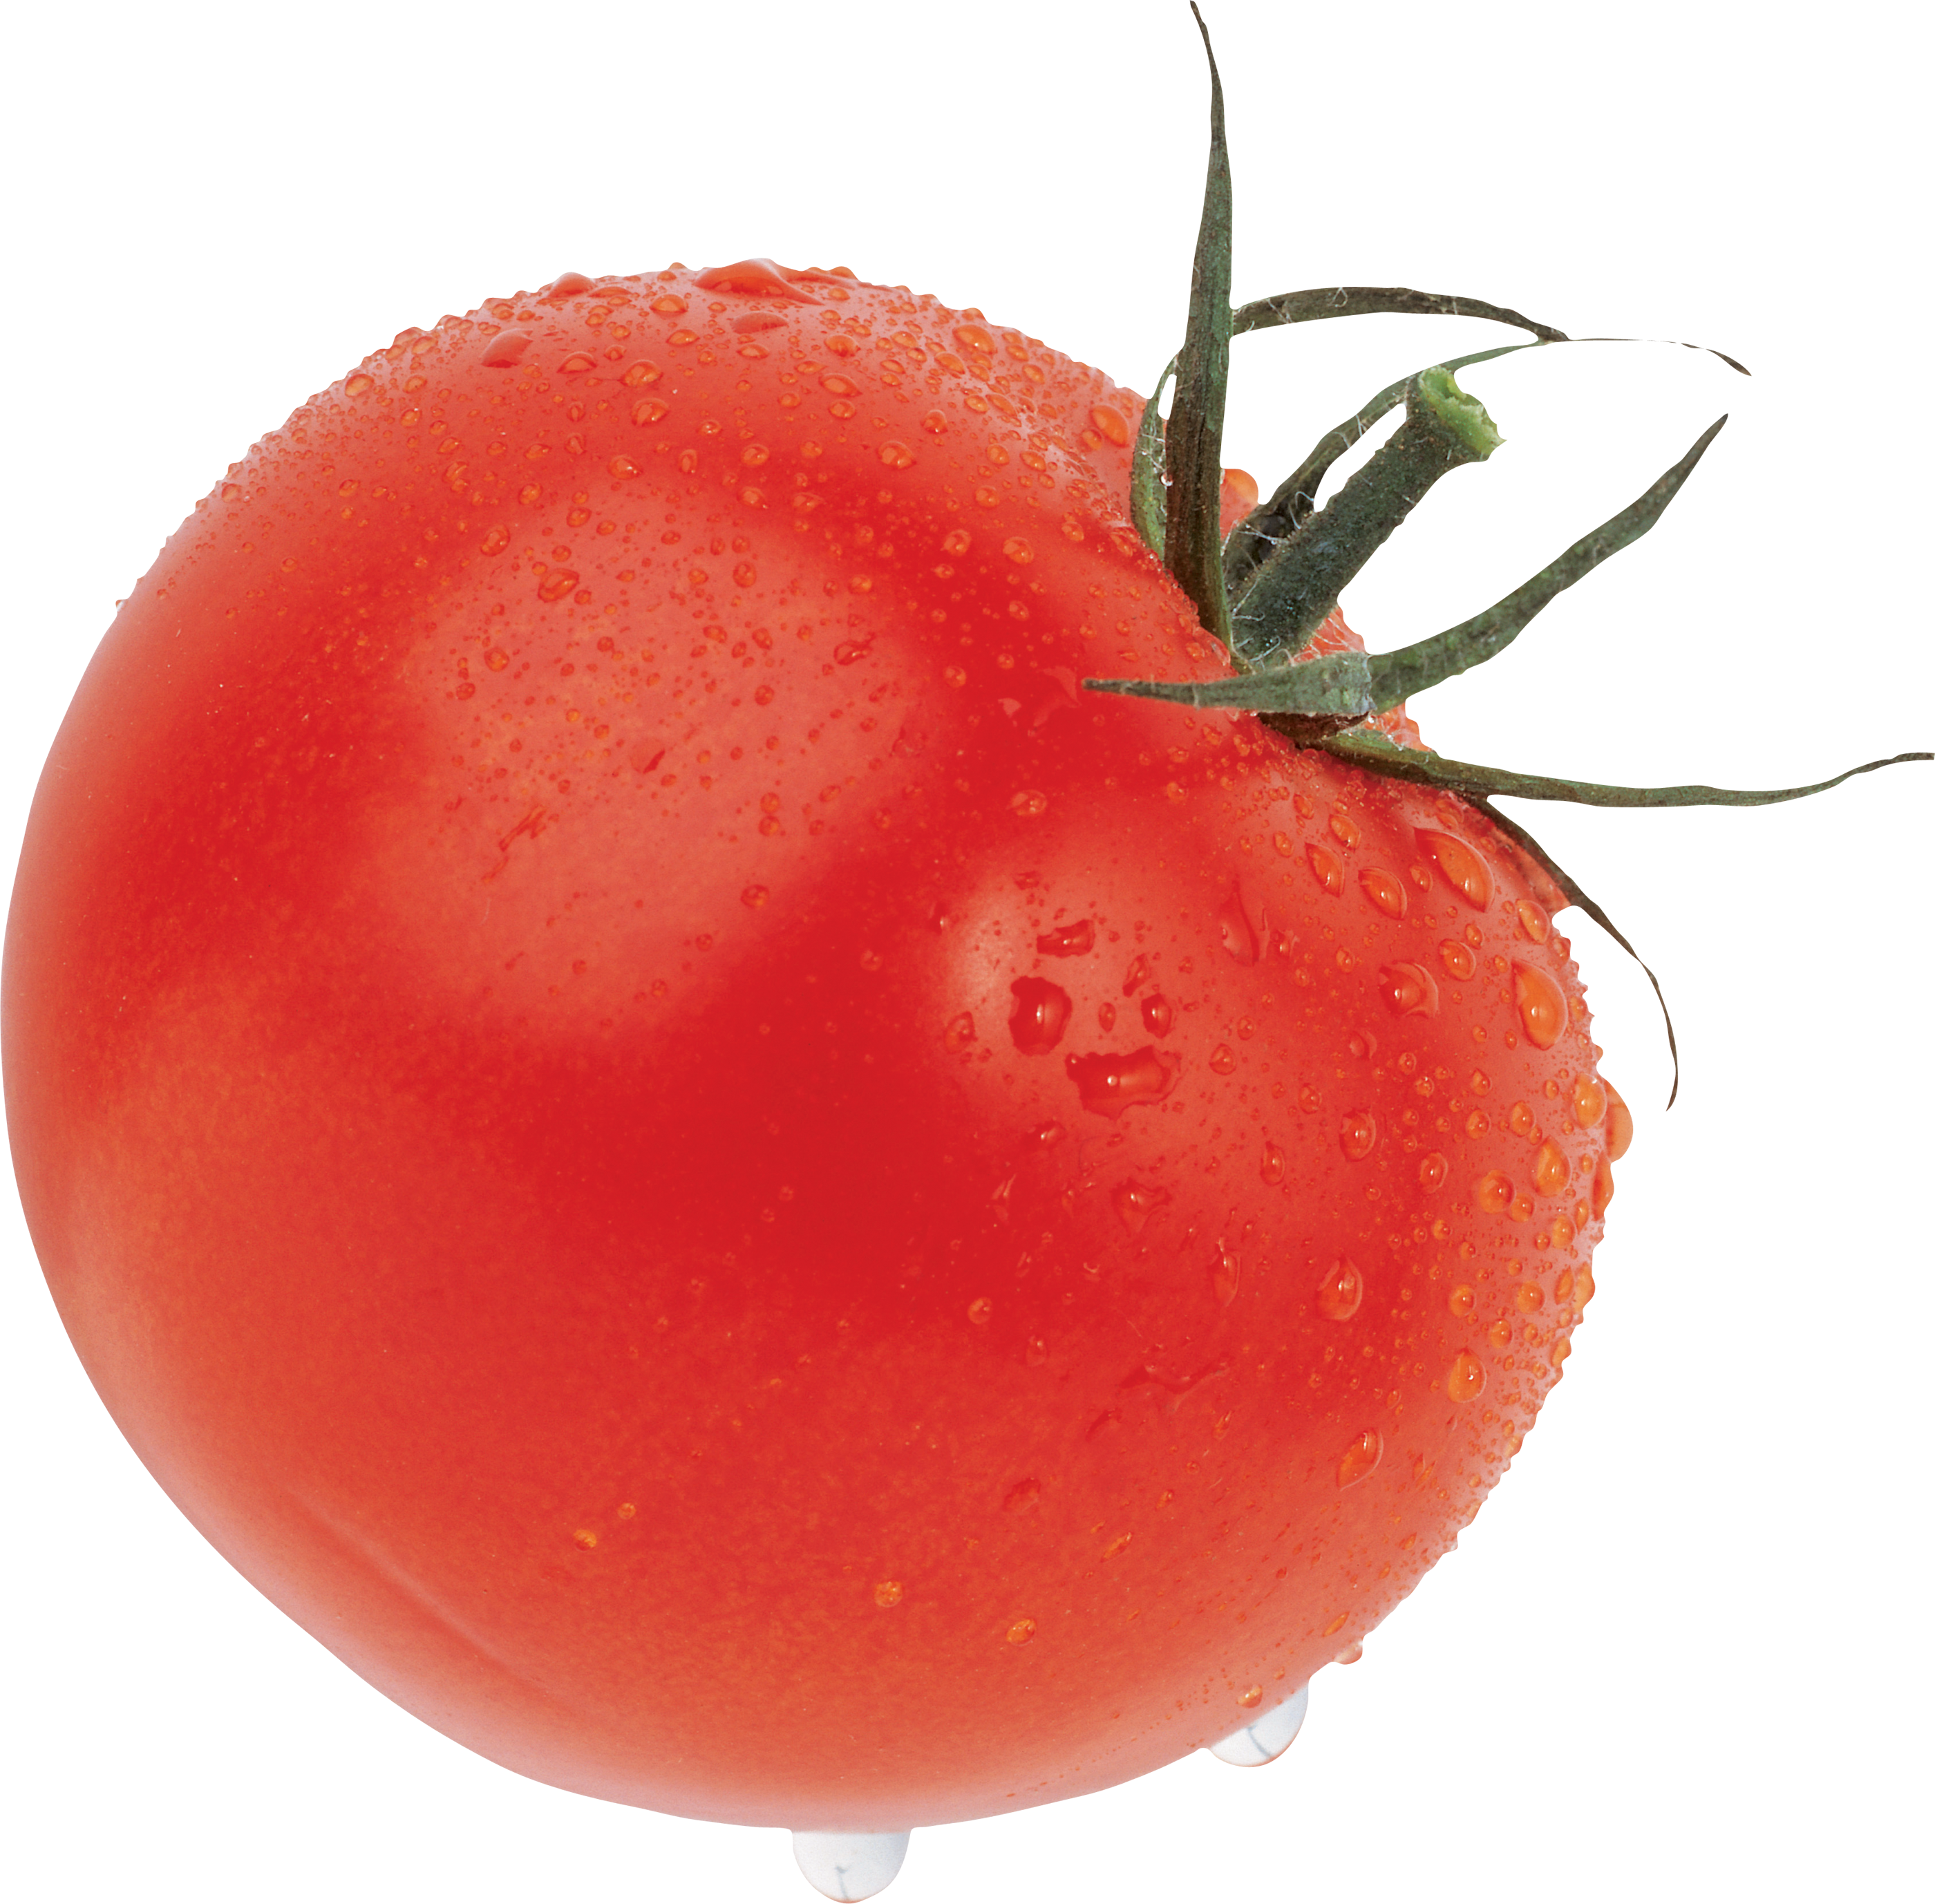 Cà chua lớn màu đỏ